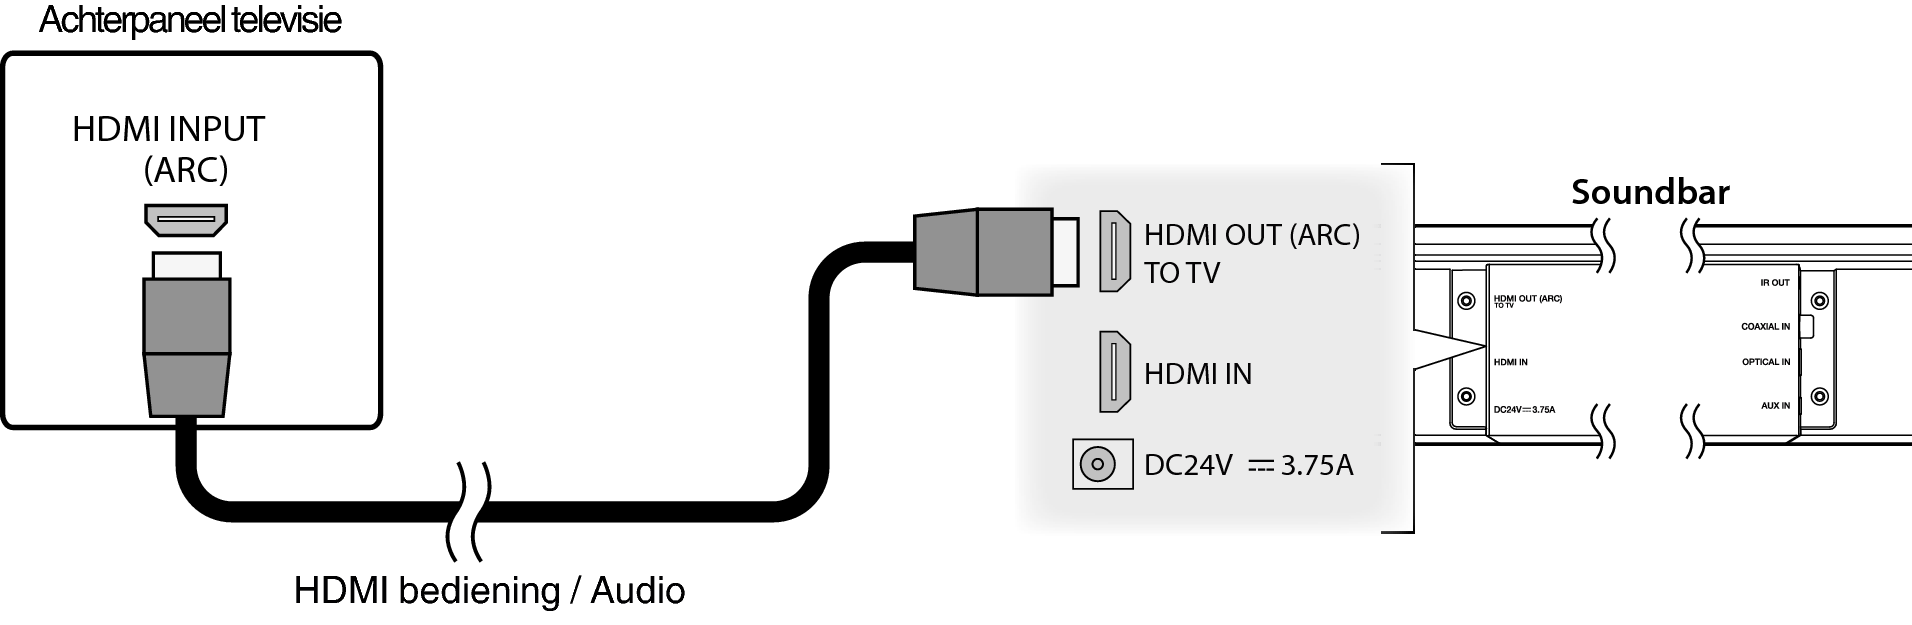 Psychiatrie Botanist De daadwerkelijke 1) HDMI (ARC) weergeven - Beste keuze HEOS HomeCinema